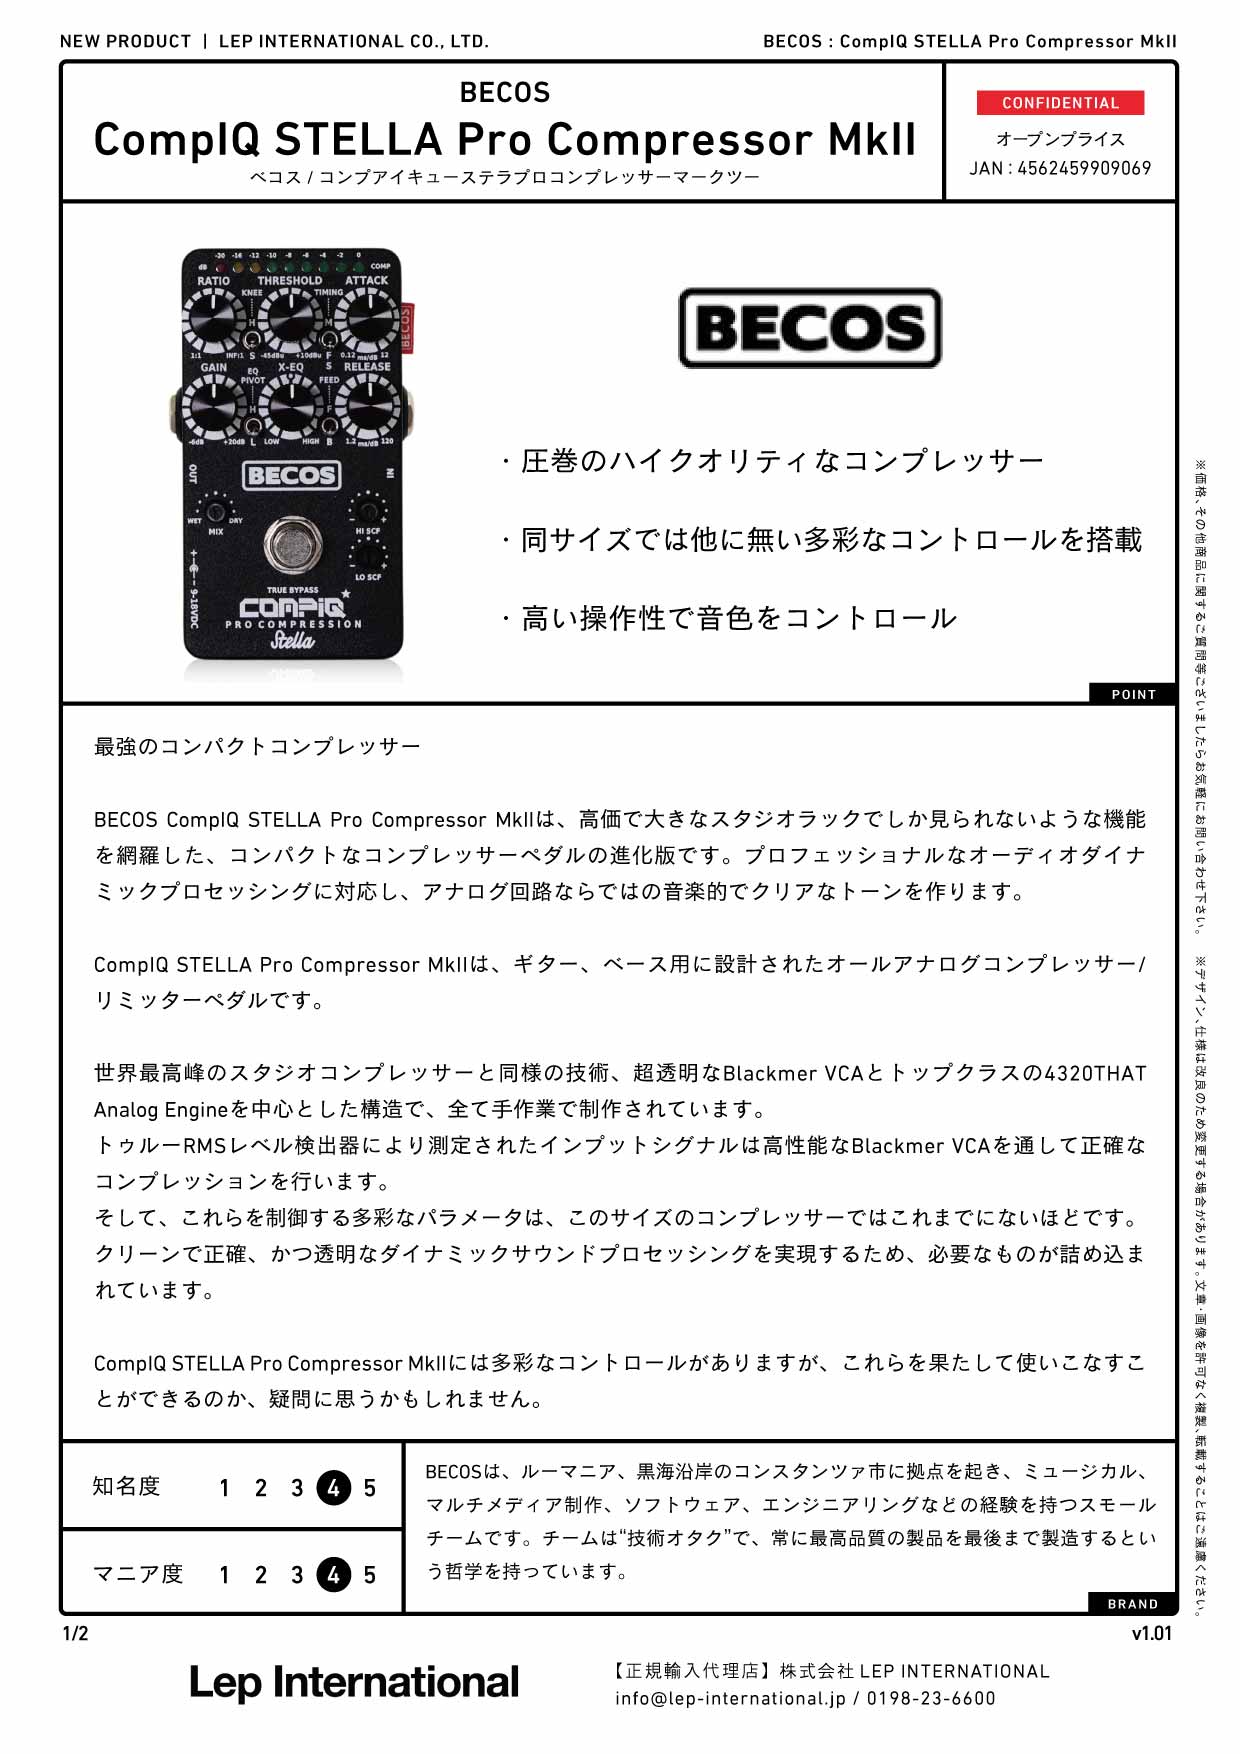 BECOS / CompIQ STELLA Pro Compressor MkII